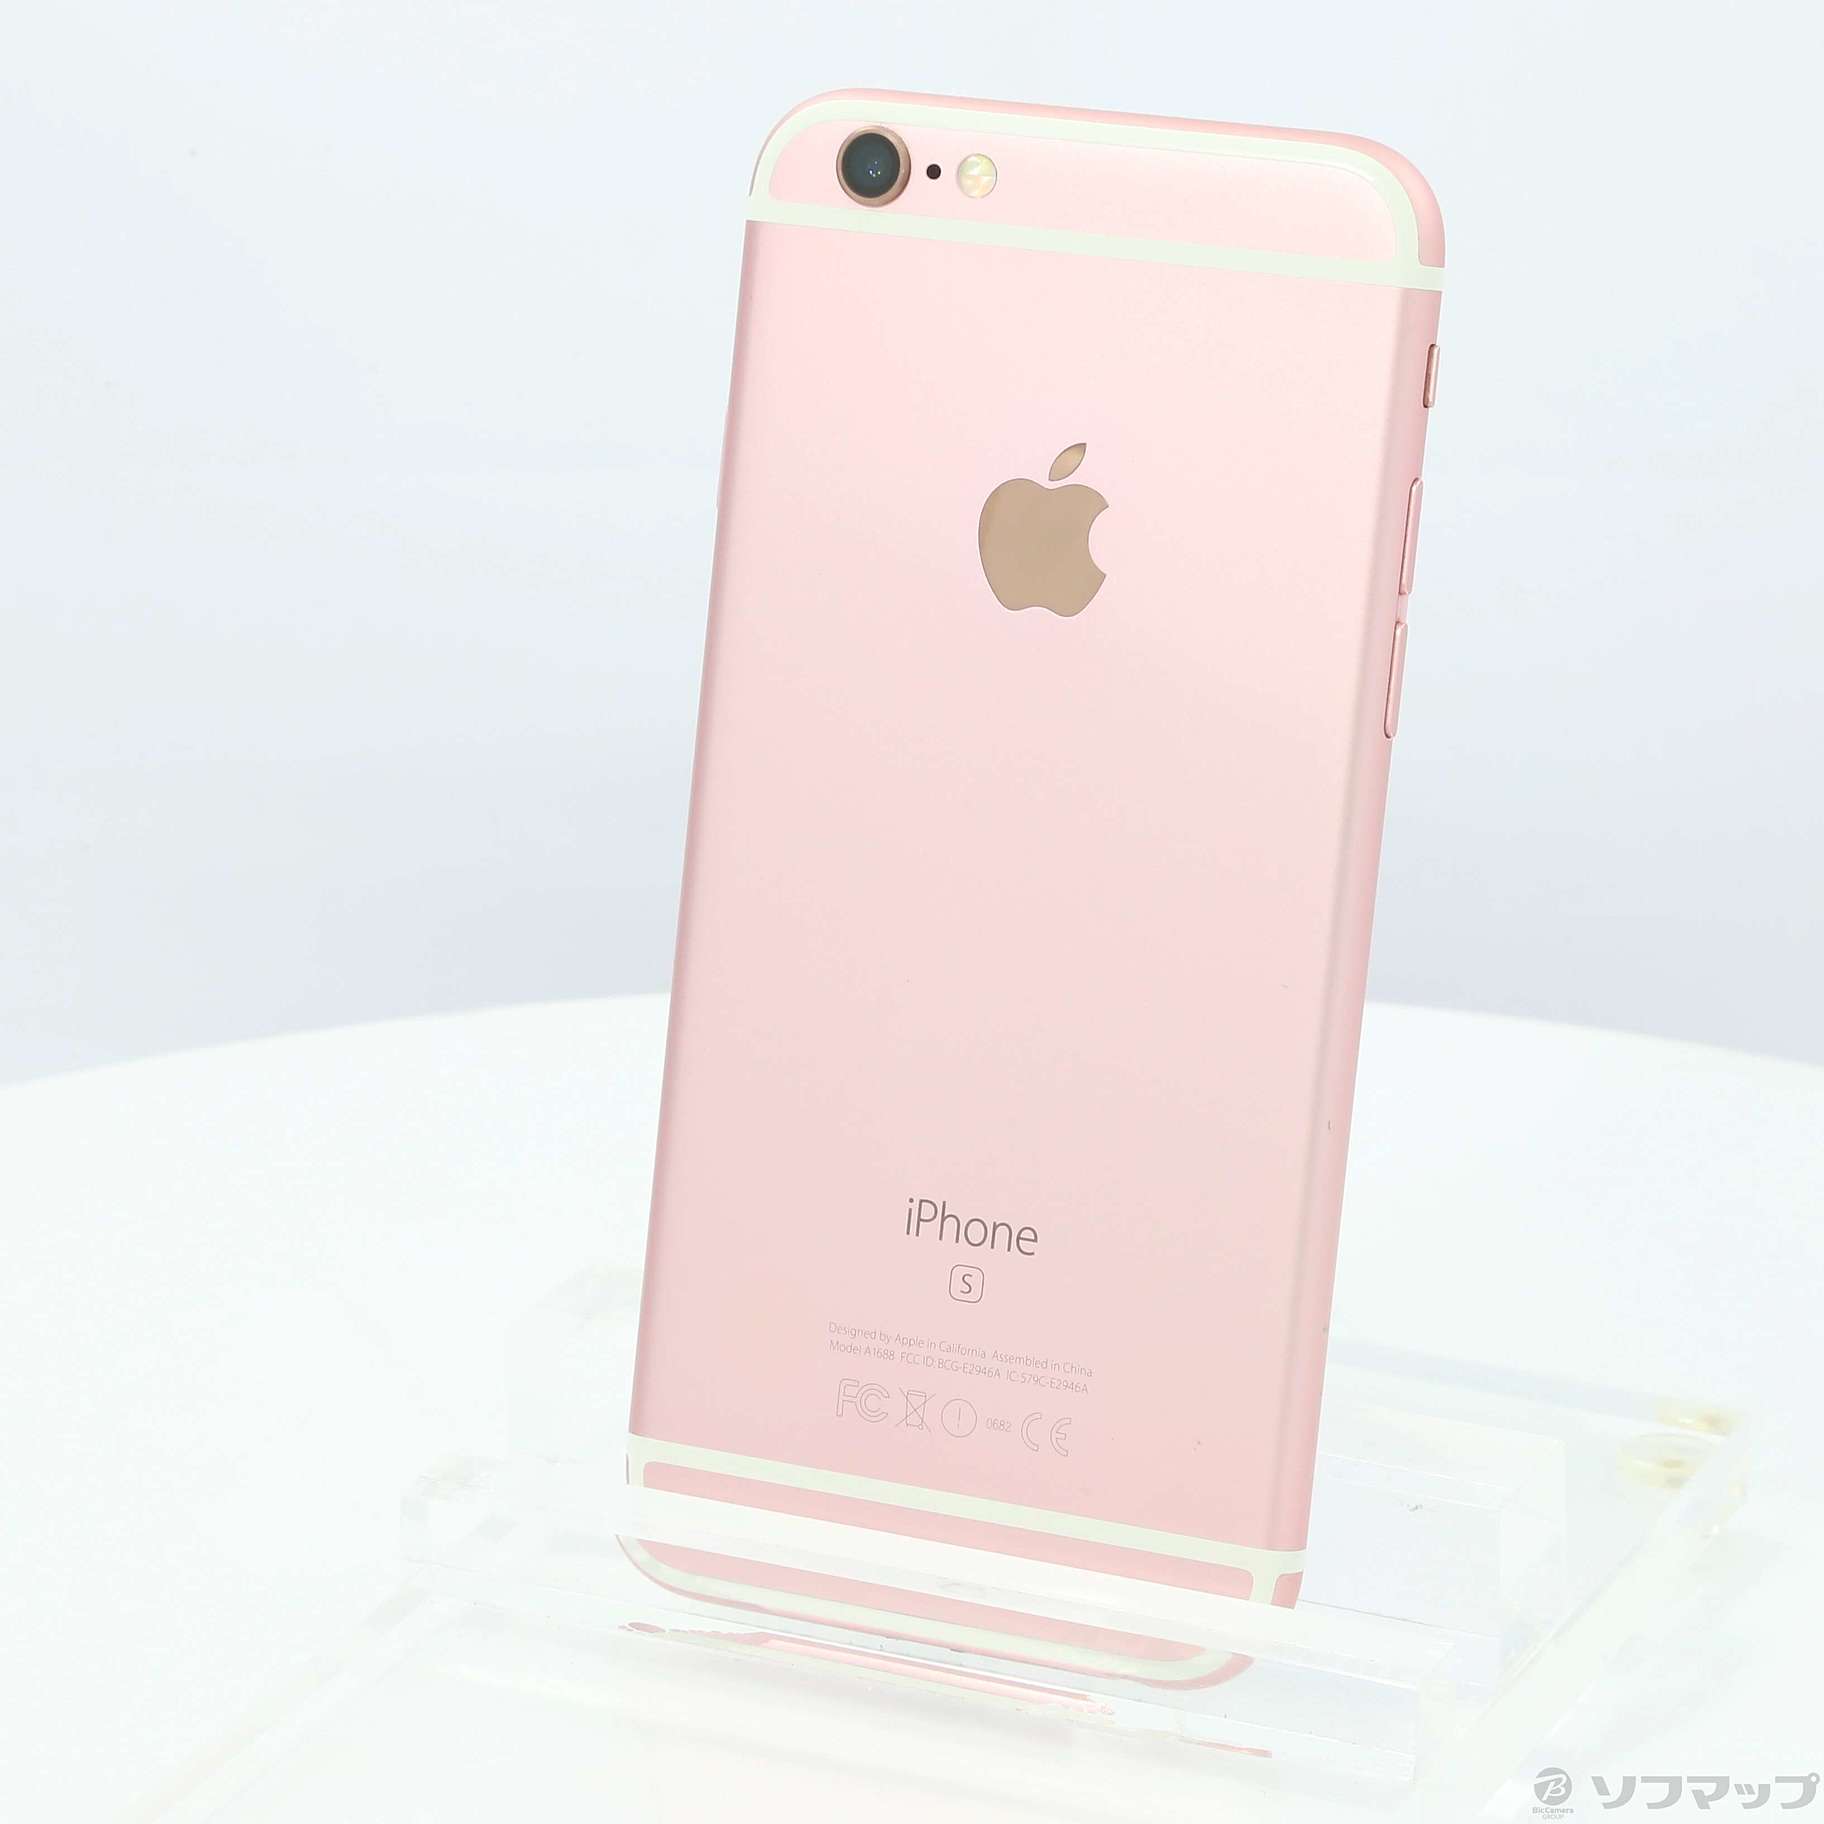 スマートフォン/携帯電話iPhone 6s Rose Gold 16 GB SIMフリー